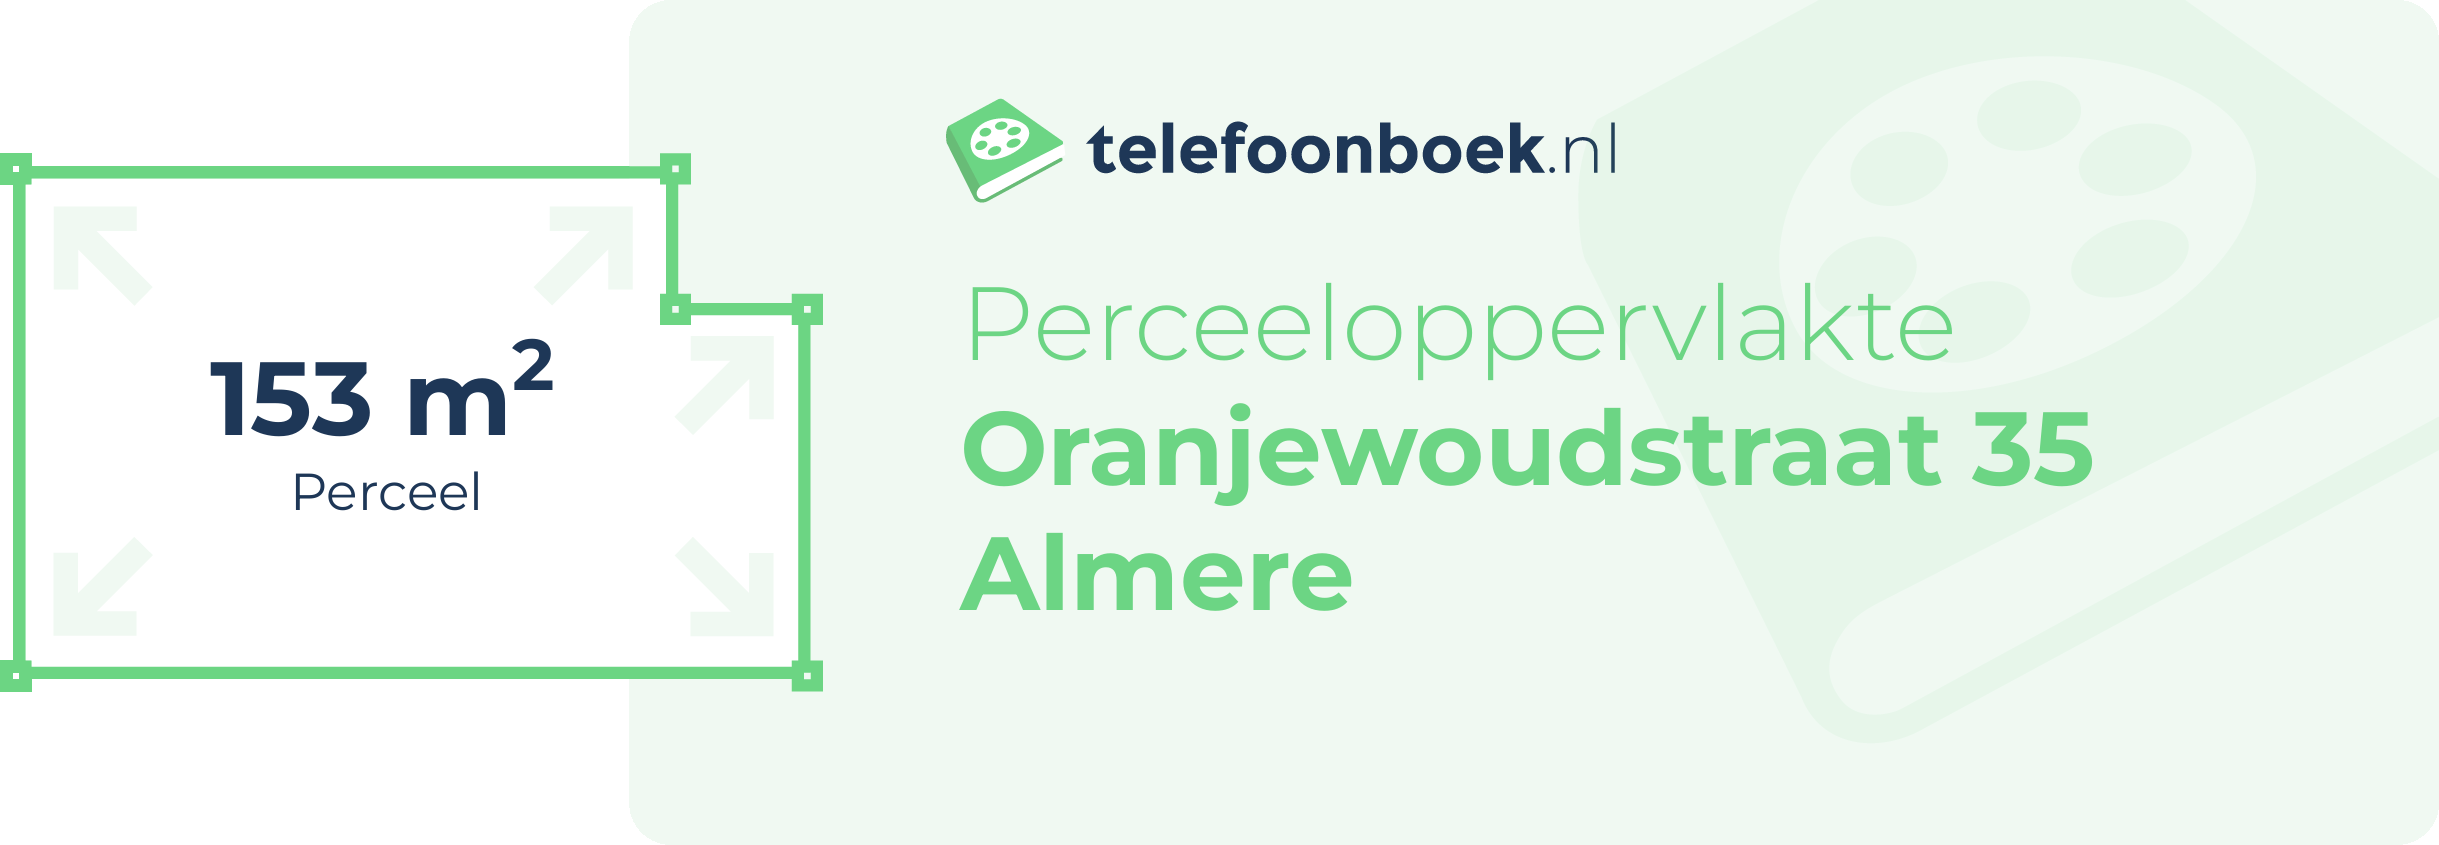 Perceeloppervlakte Oranjewoudstraat 35 Almere